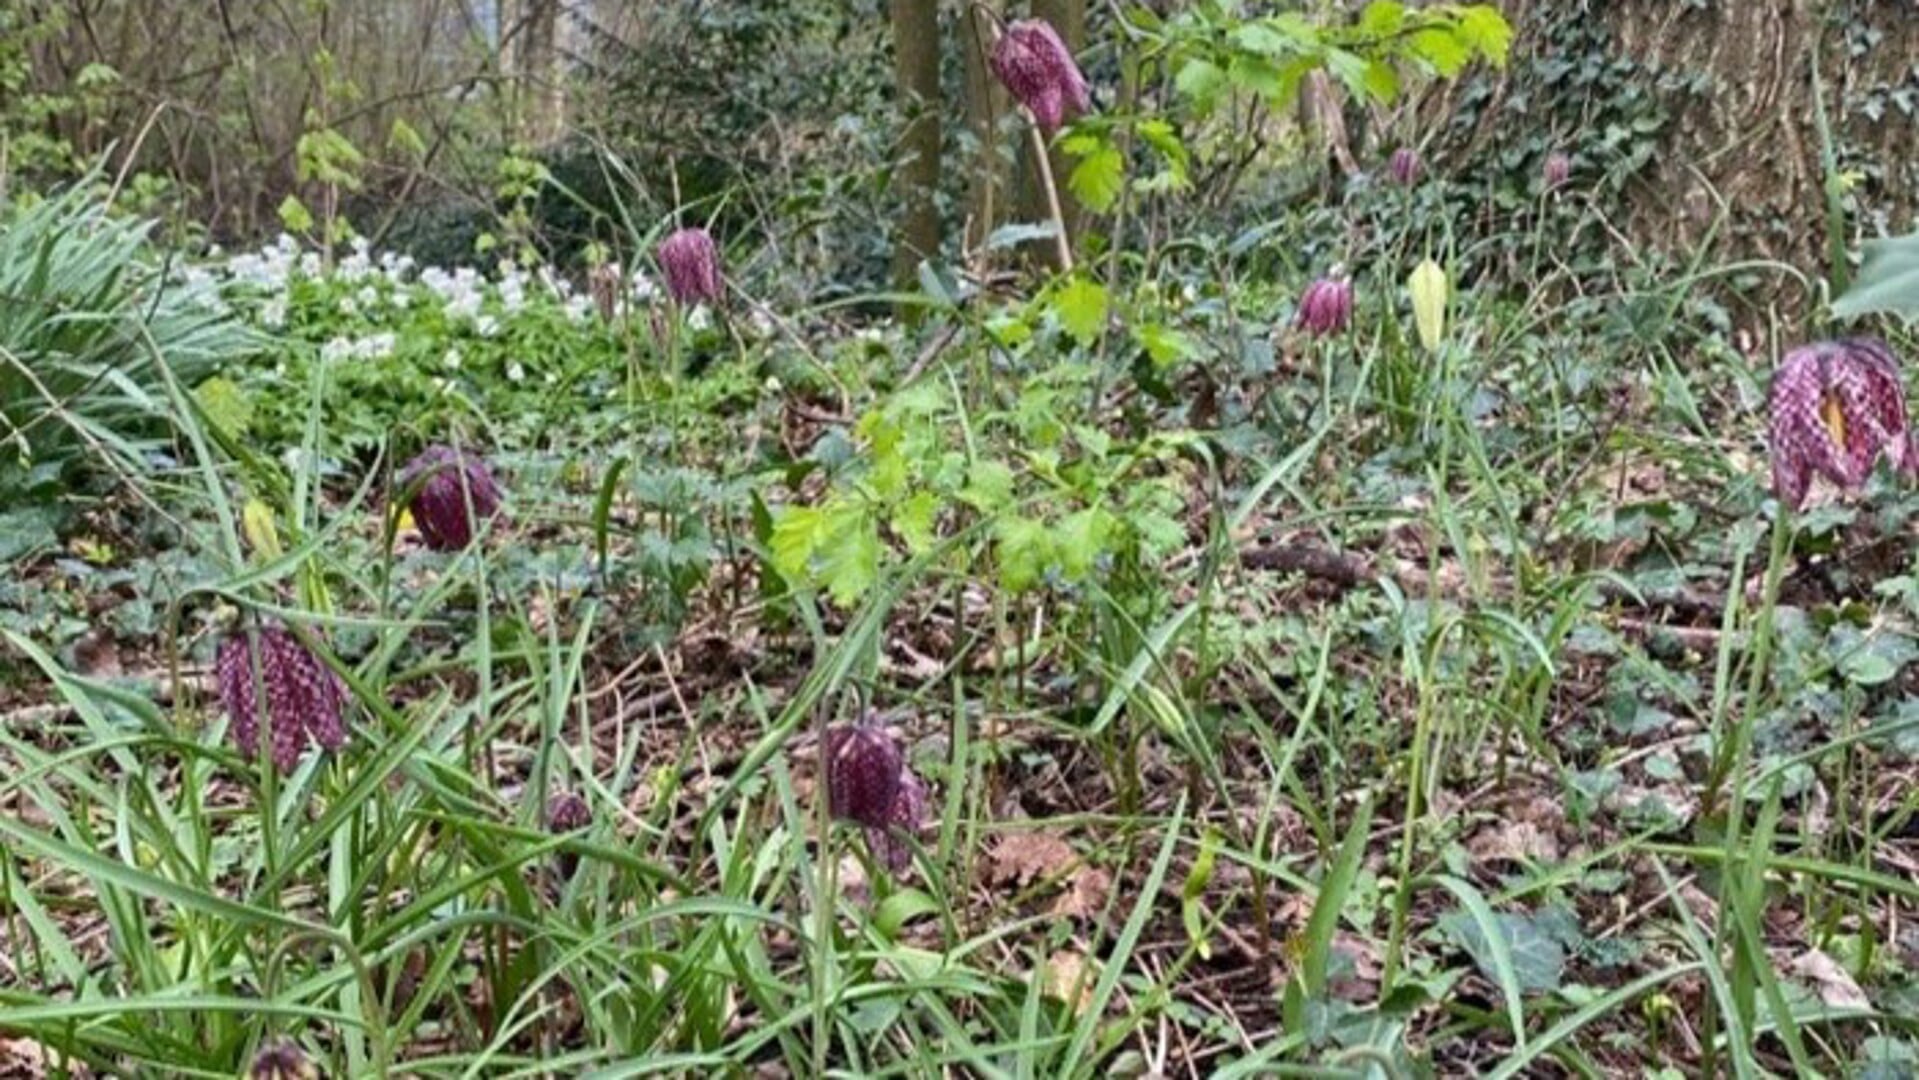 Heempark Rusthout herbergt volgens de AVN waardevolle flora, waaronder de zeldzame kievitsbloem.